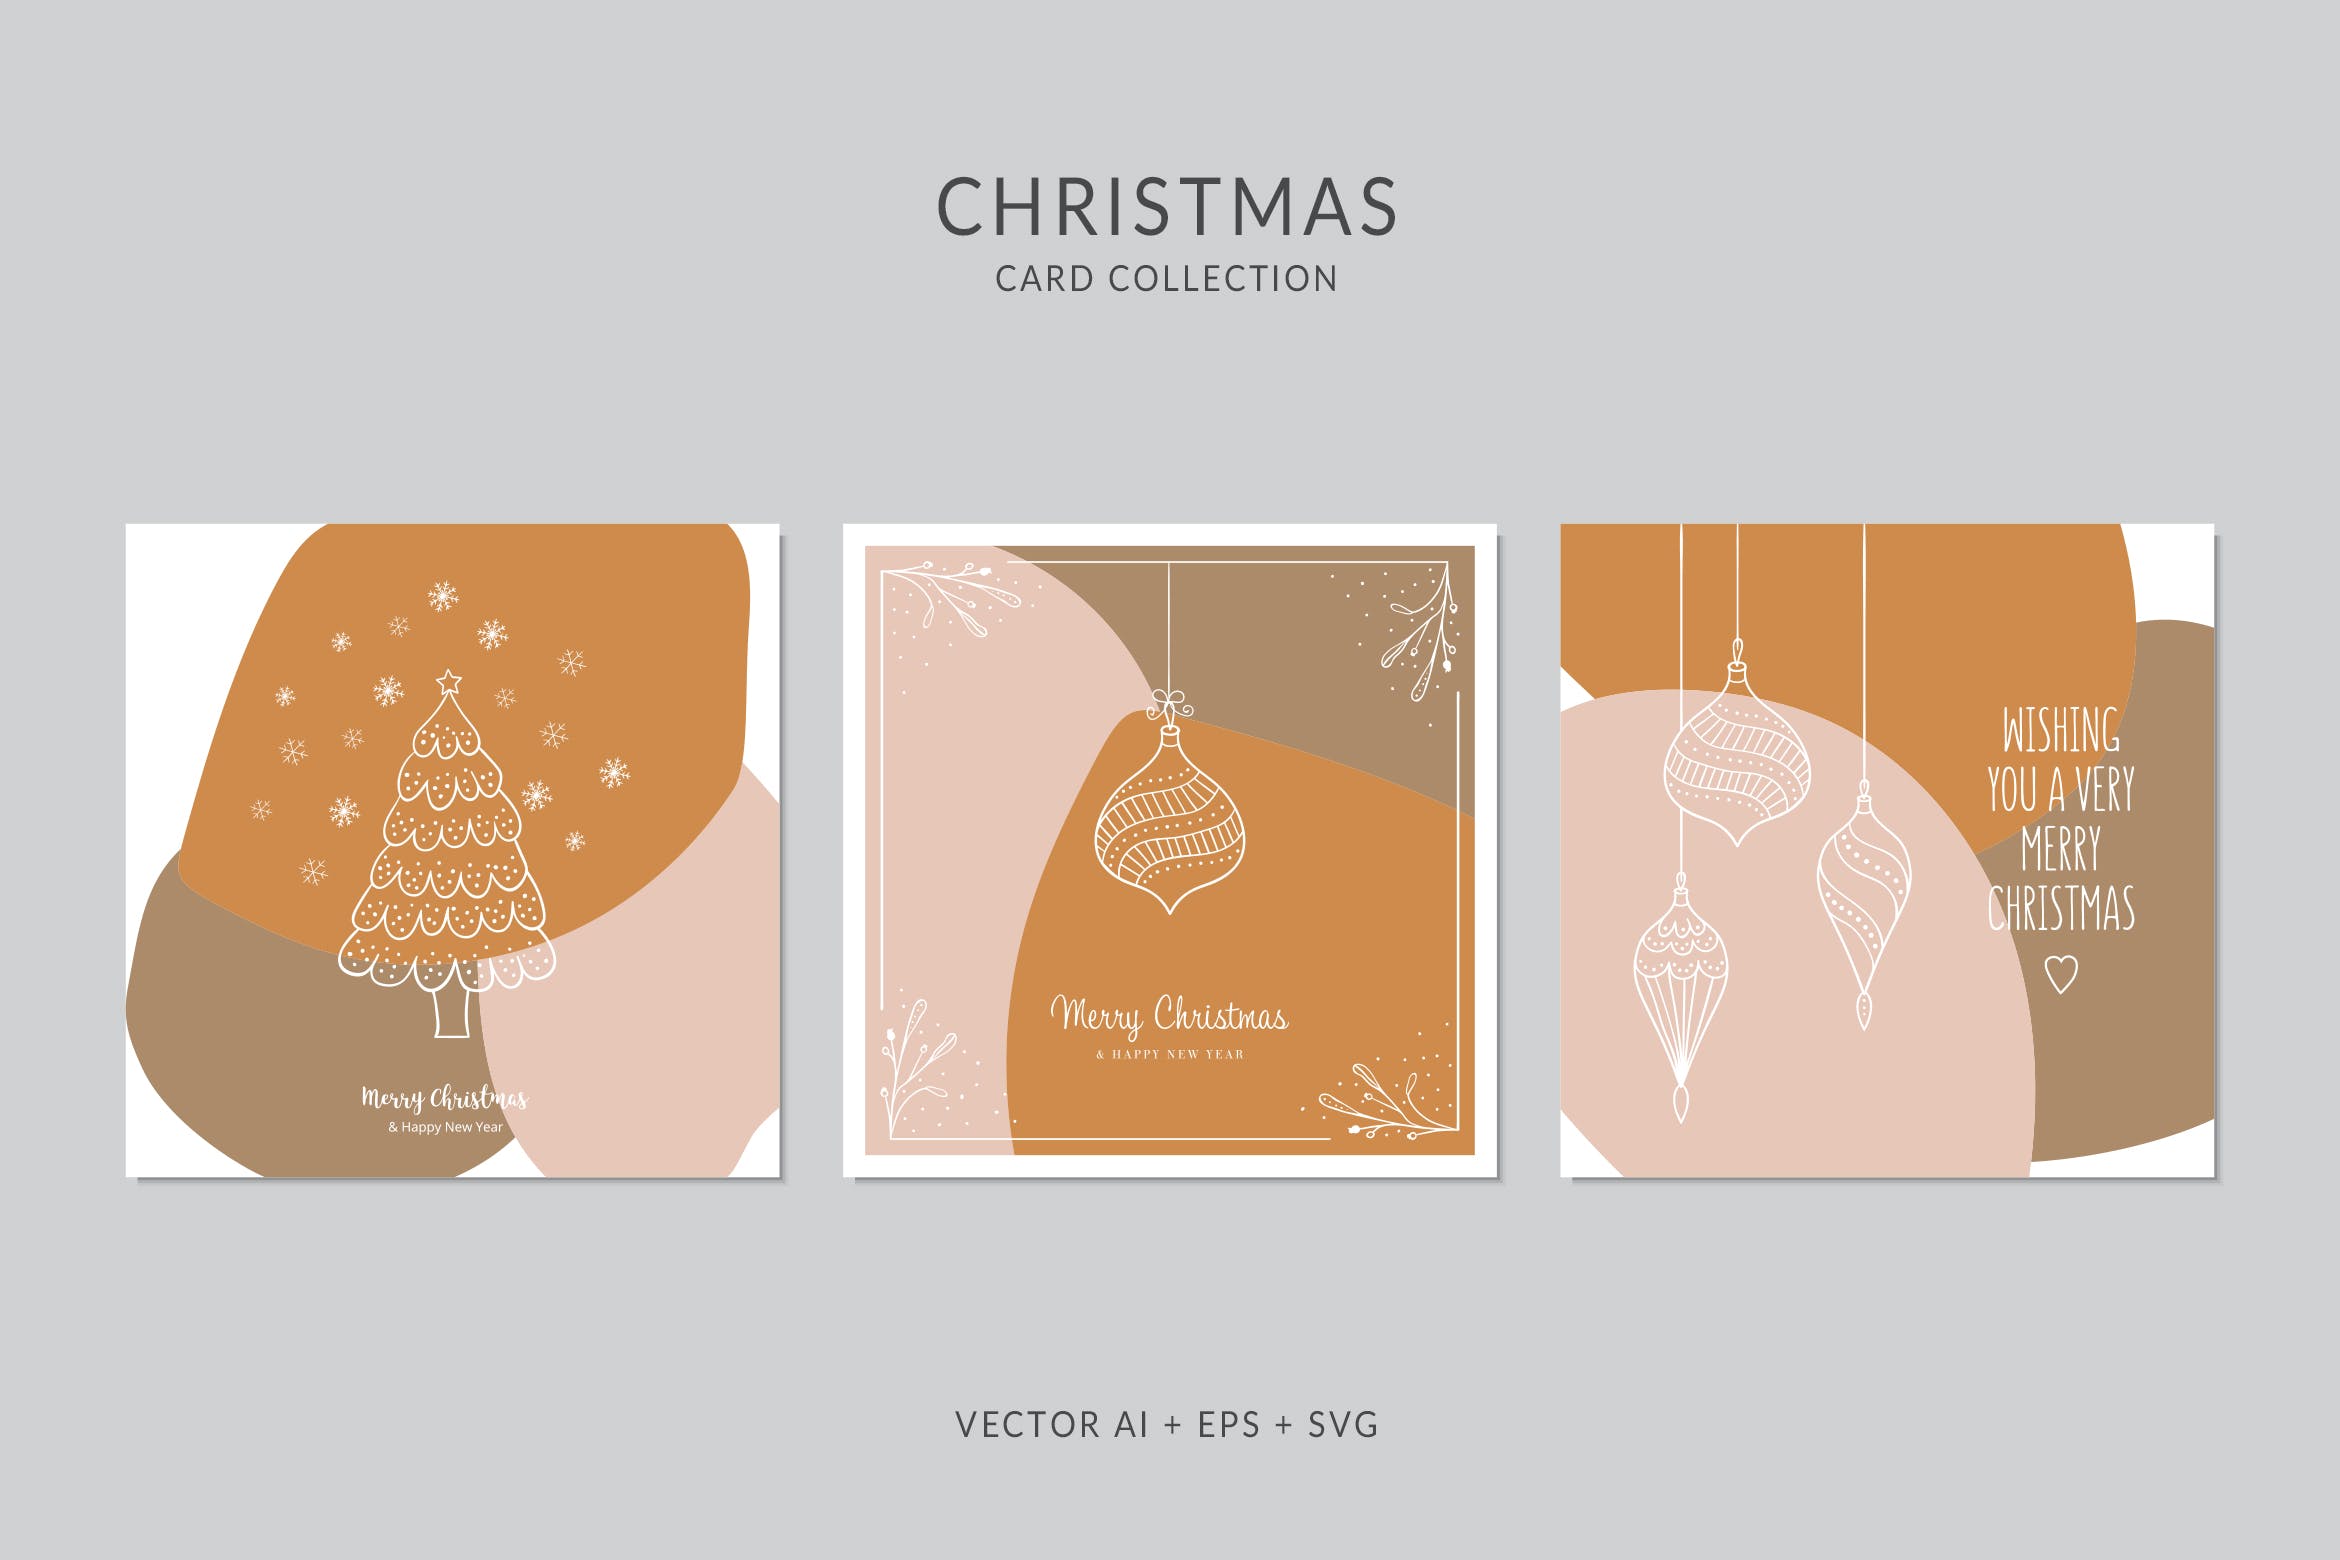 创意三色设计风格诞节贺卡矢量设计模板集v2 Christmas Greeting Card Vector Set插图